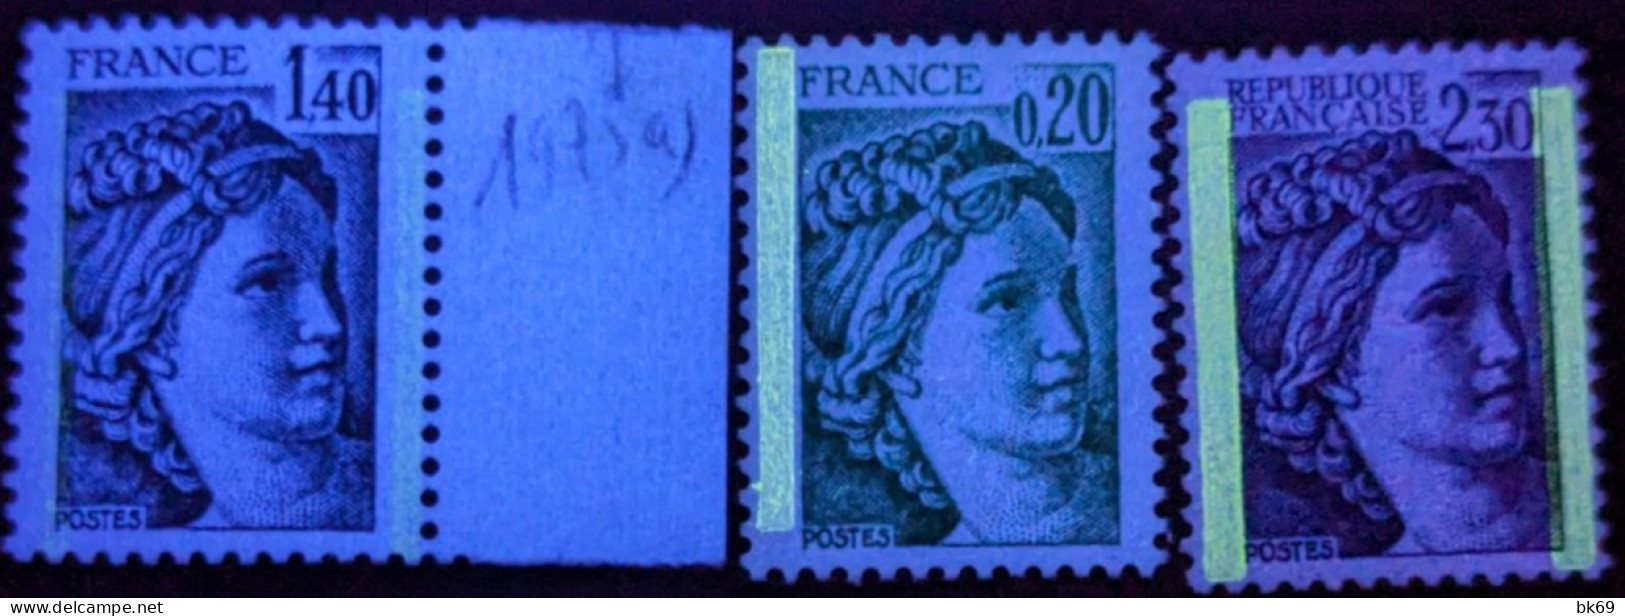 3 Variétés 1967a ,1975a GT, 2156b GT** Cote 6.70€ - Unused Stamps